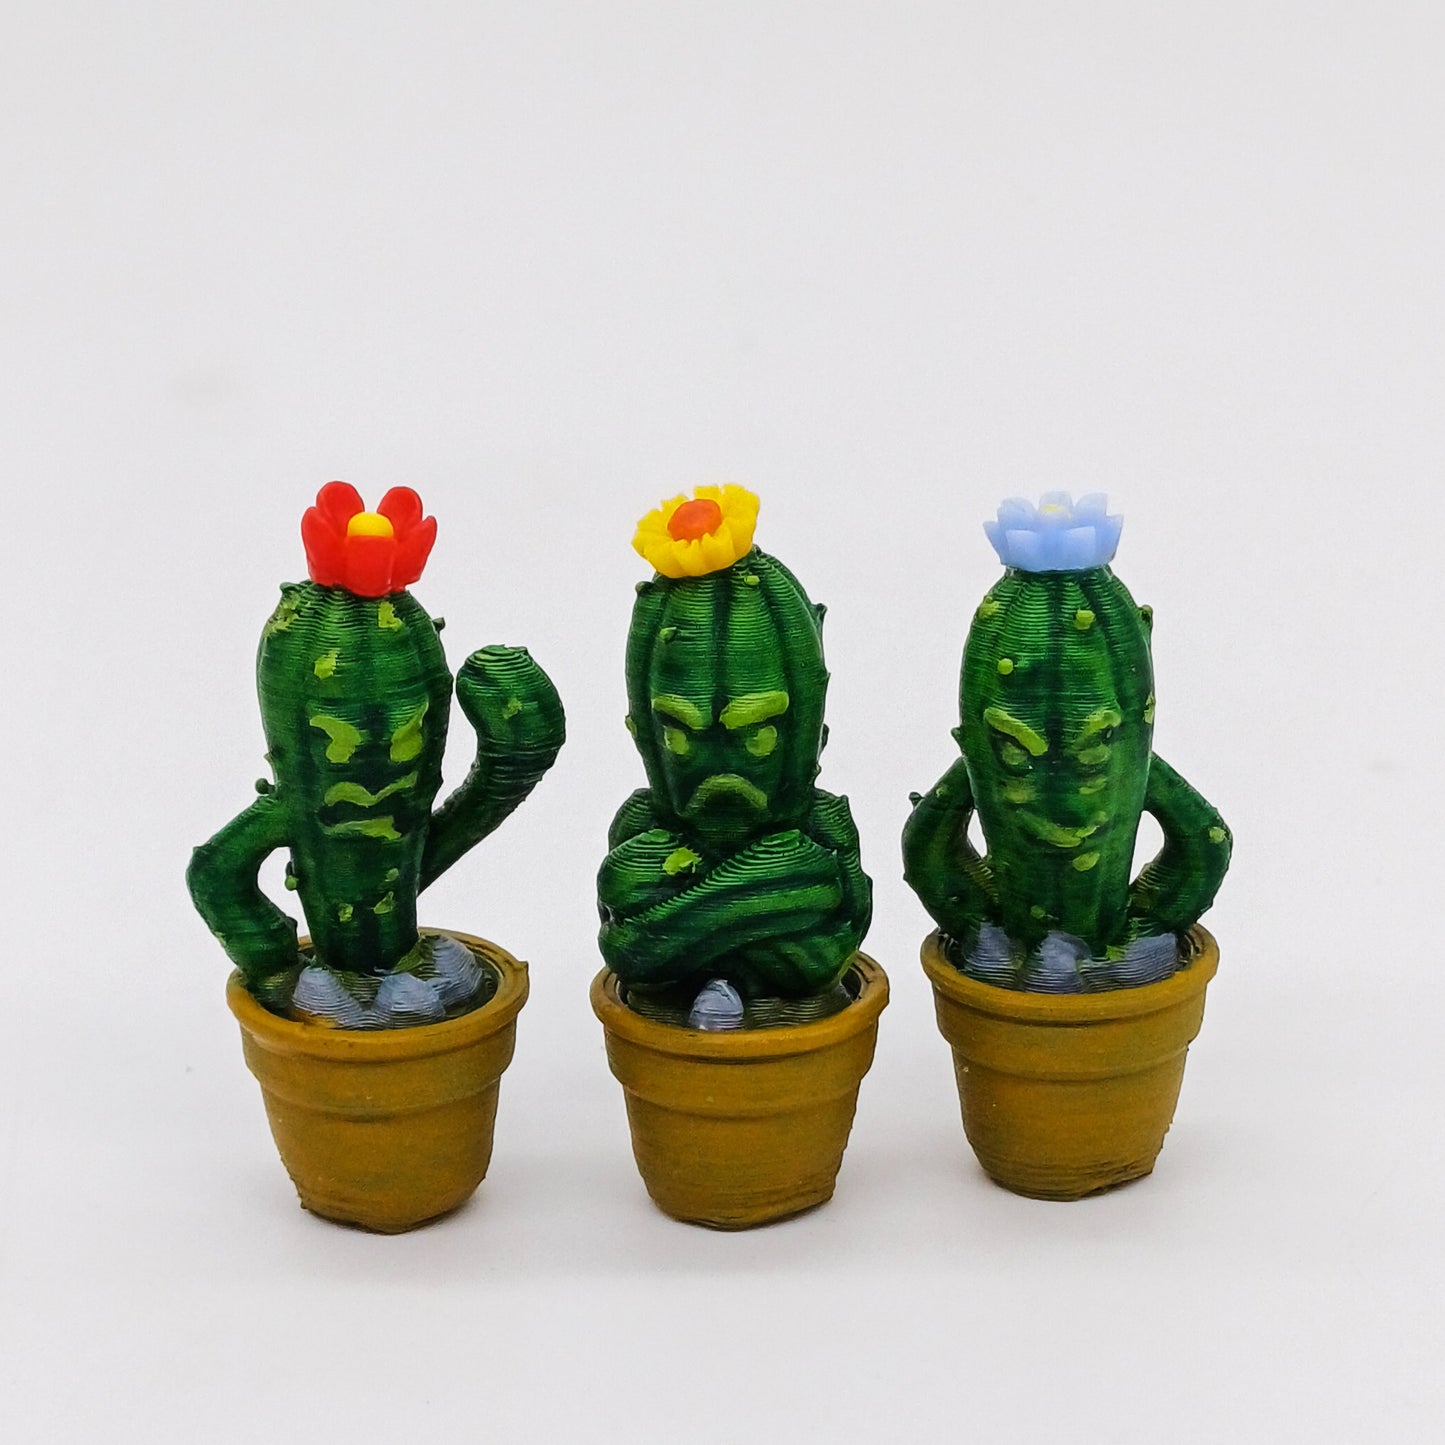 Sogty cactus en una escala de 1:12